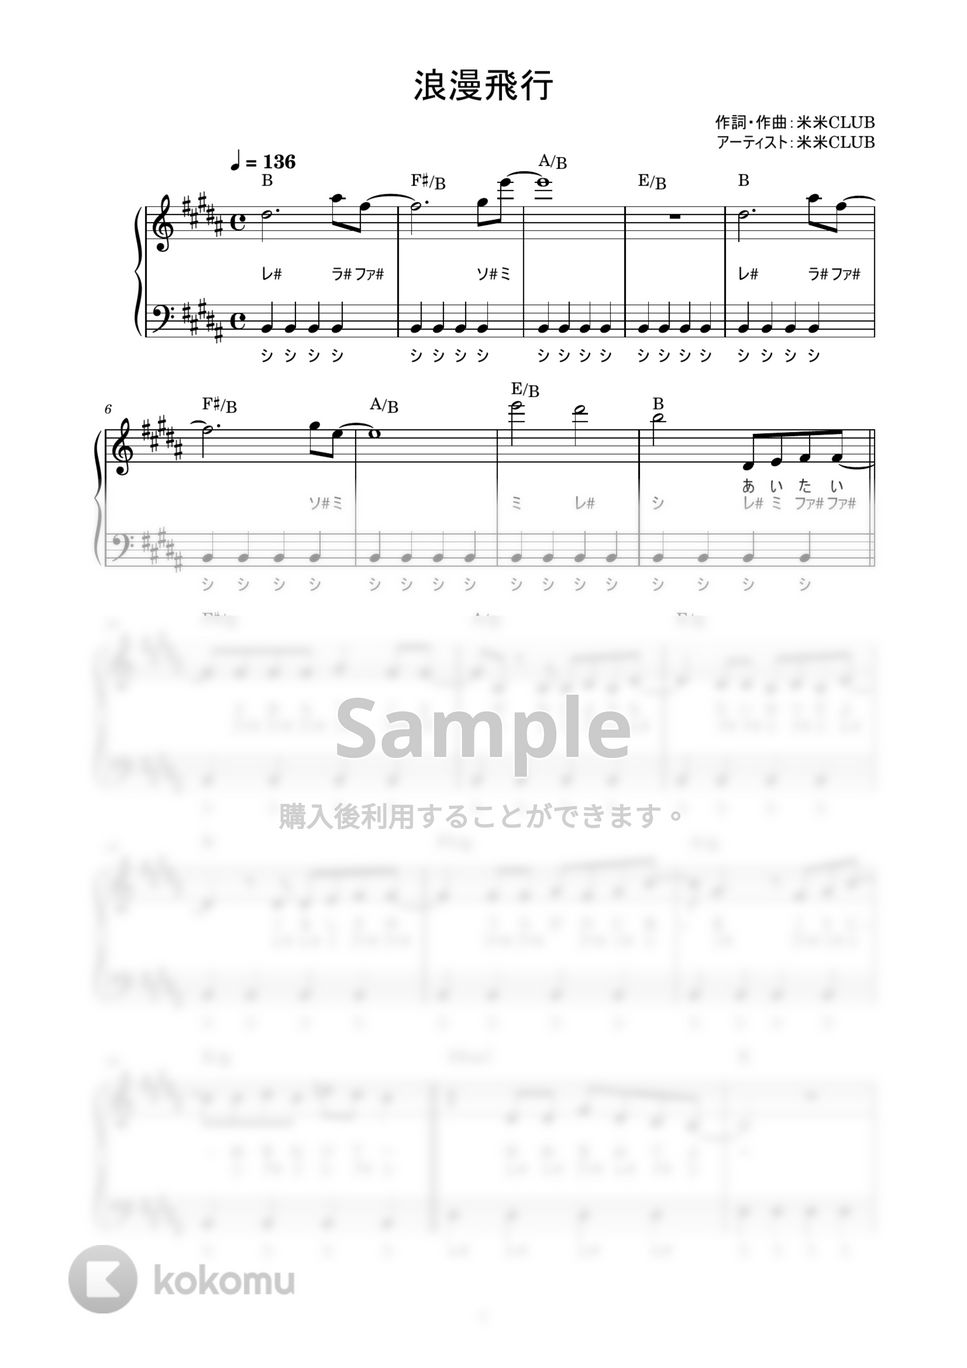 米米CLUB - 浪漫飛行 (かんたん / 歌詞付き / ドレミ付き / 初心者) by piano.tokyo